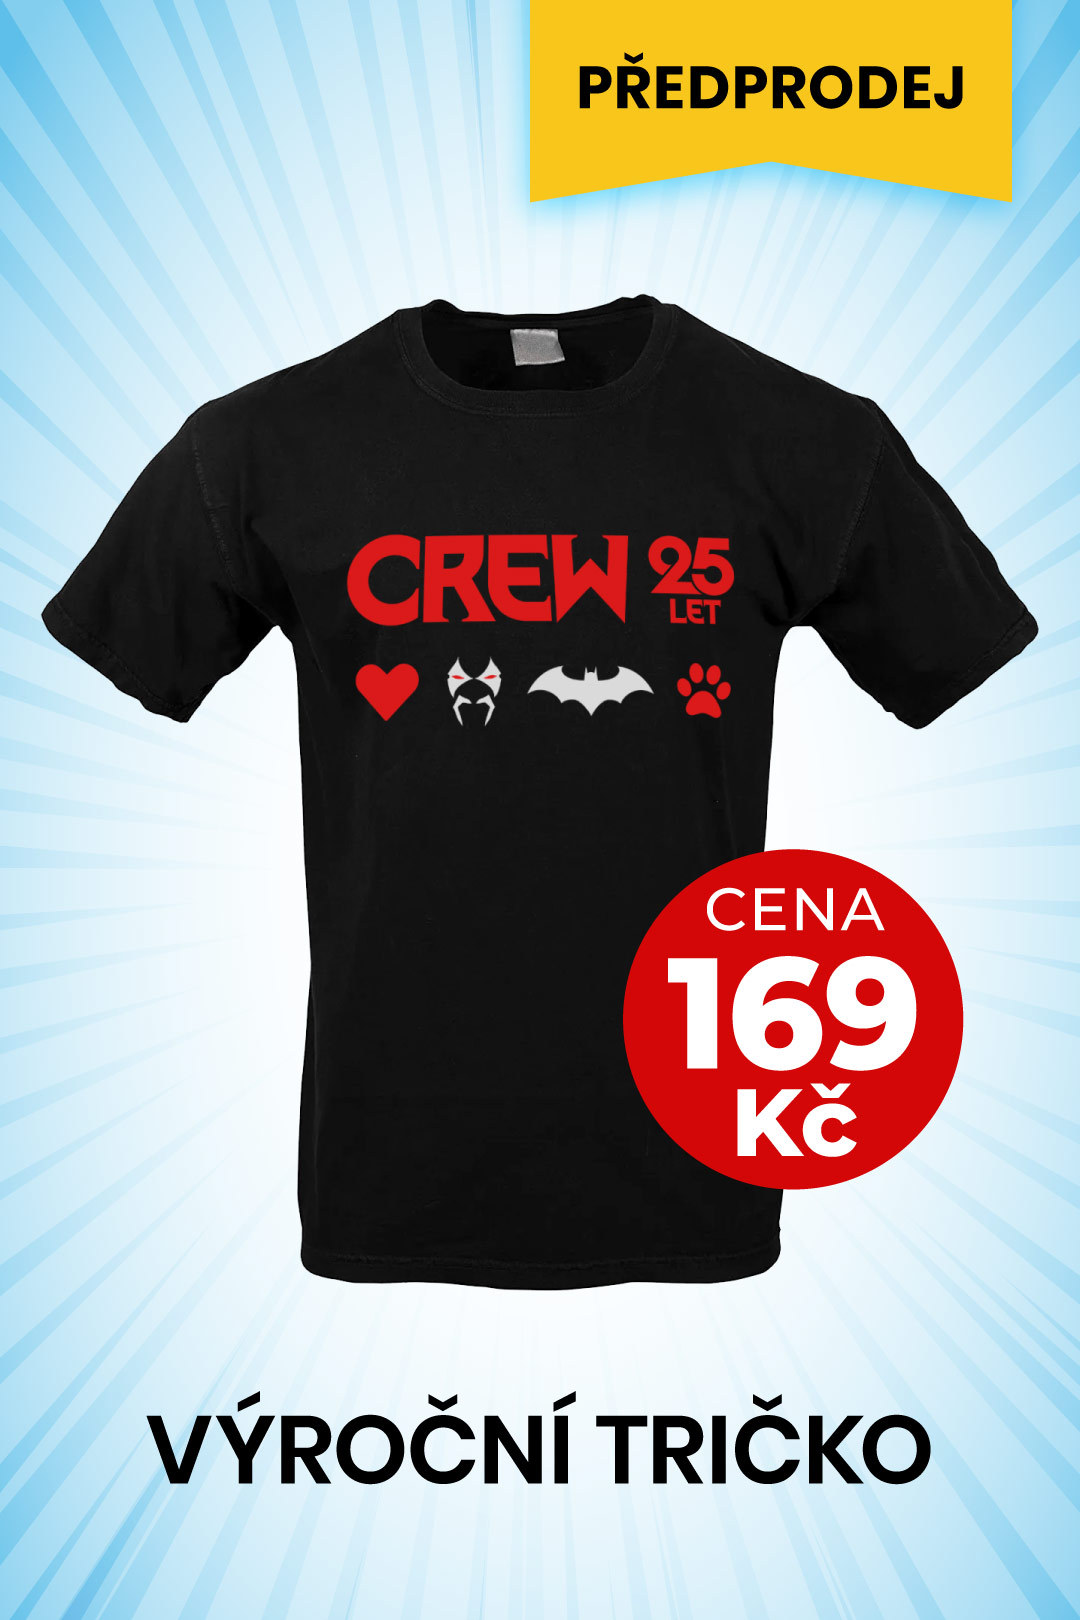 obrázek k novince - Výroční tričko CREW 25 let (objednat lze jen do 1. 8. 2022)